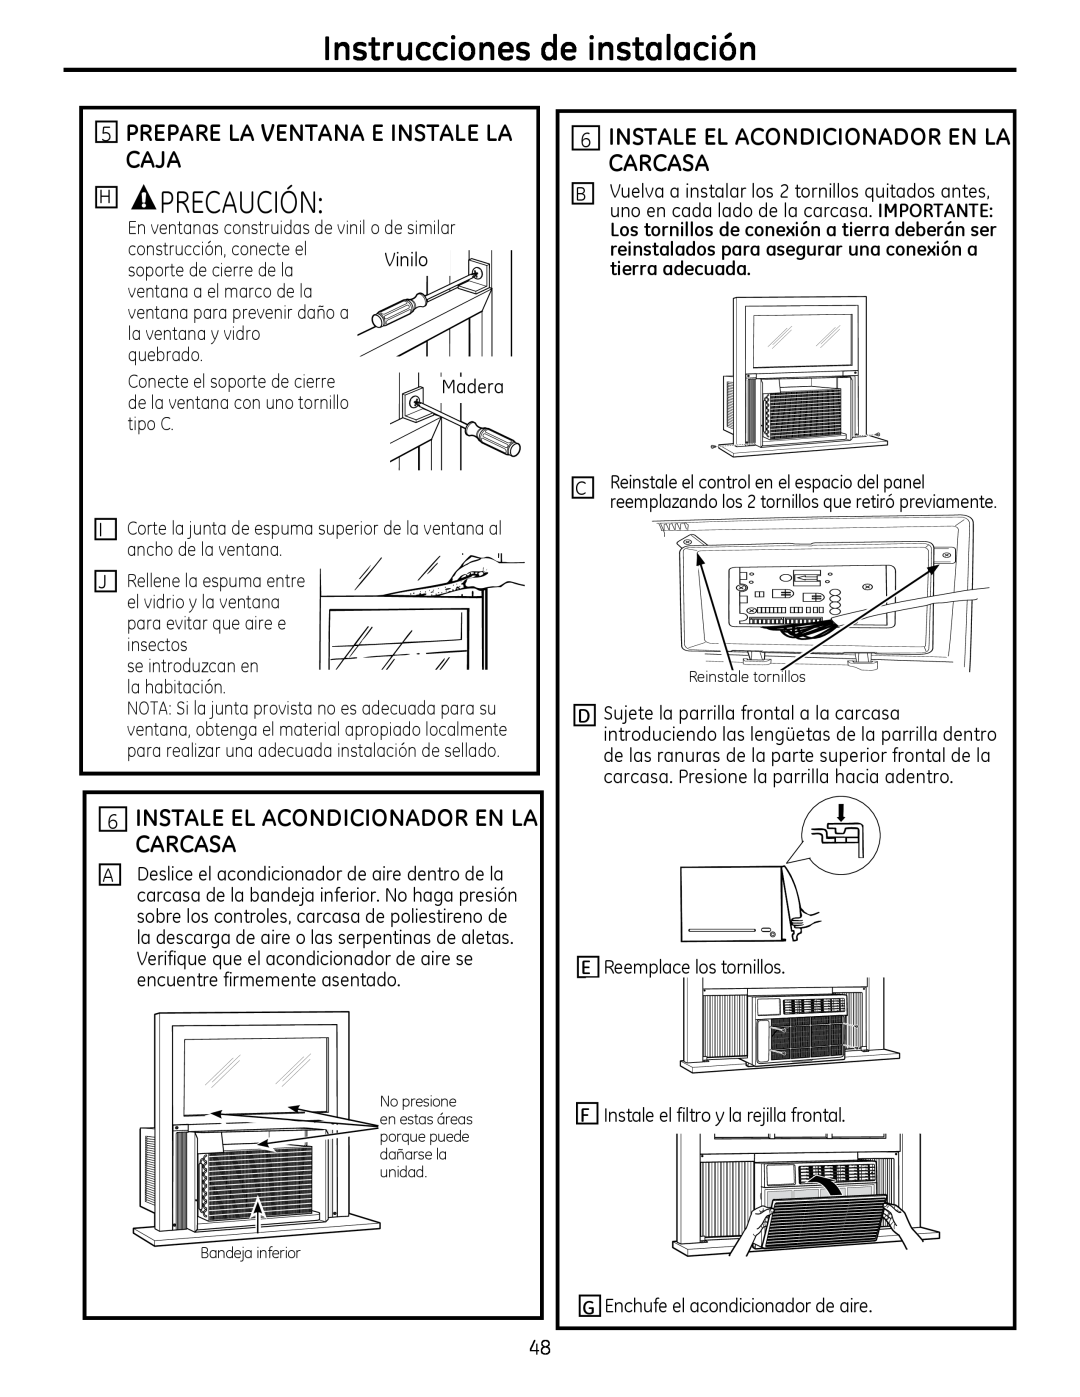 GE AEQ2, AEM2 installation instructions 6INSTALE EL ACONDICIONADOR EN LA CARCASA, Instrucciones de instalación, Precaución 